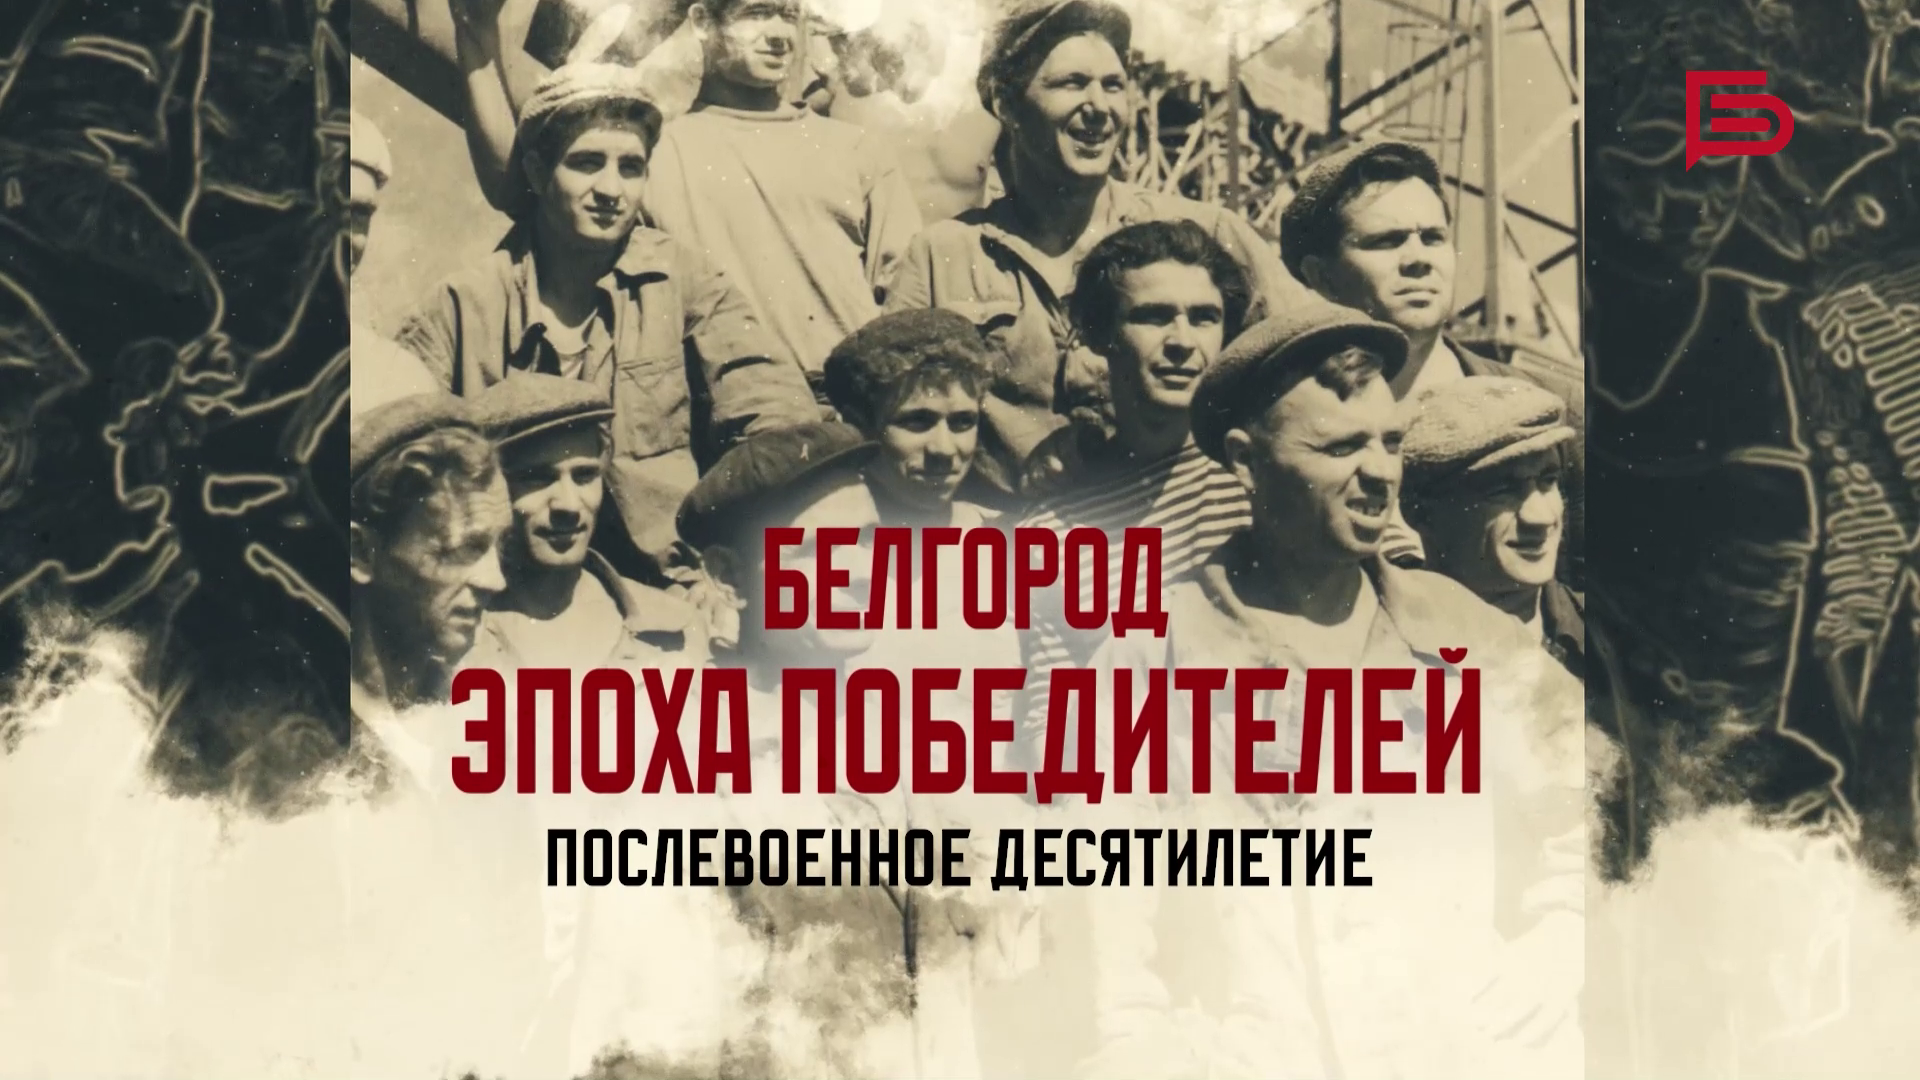 Белгород: эпоха Победителей | Первое десятилетие после окончания Великой Отечественной войны